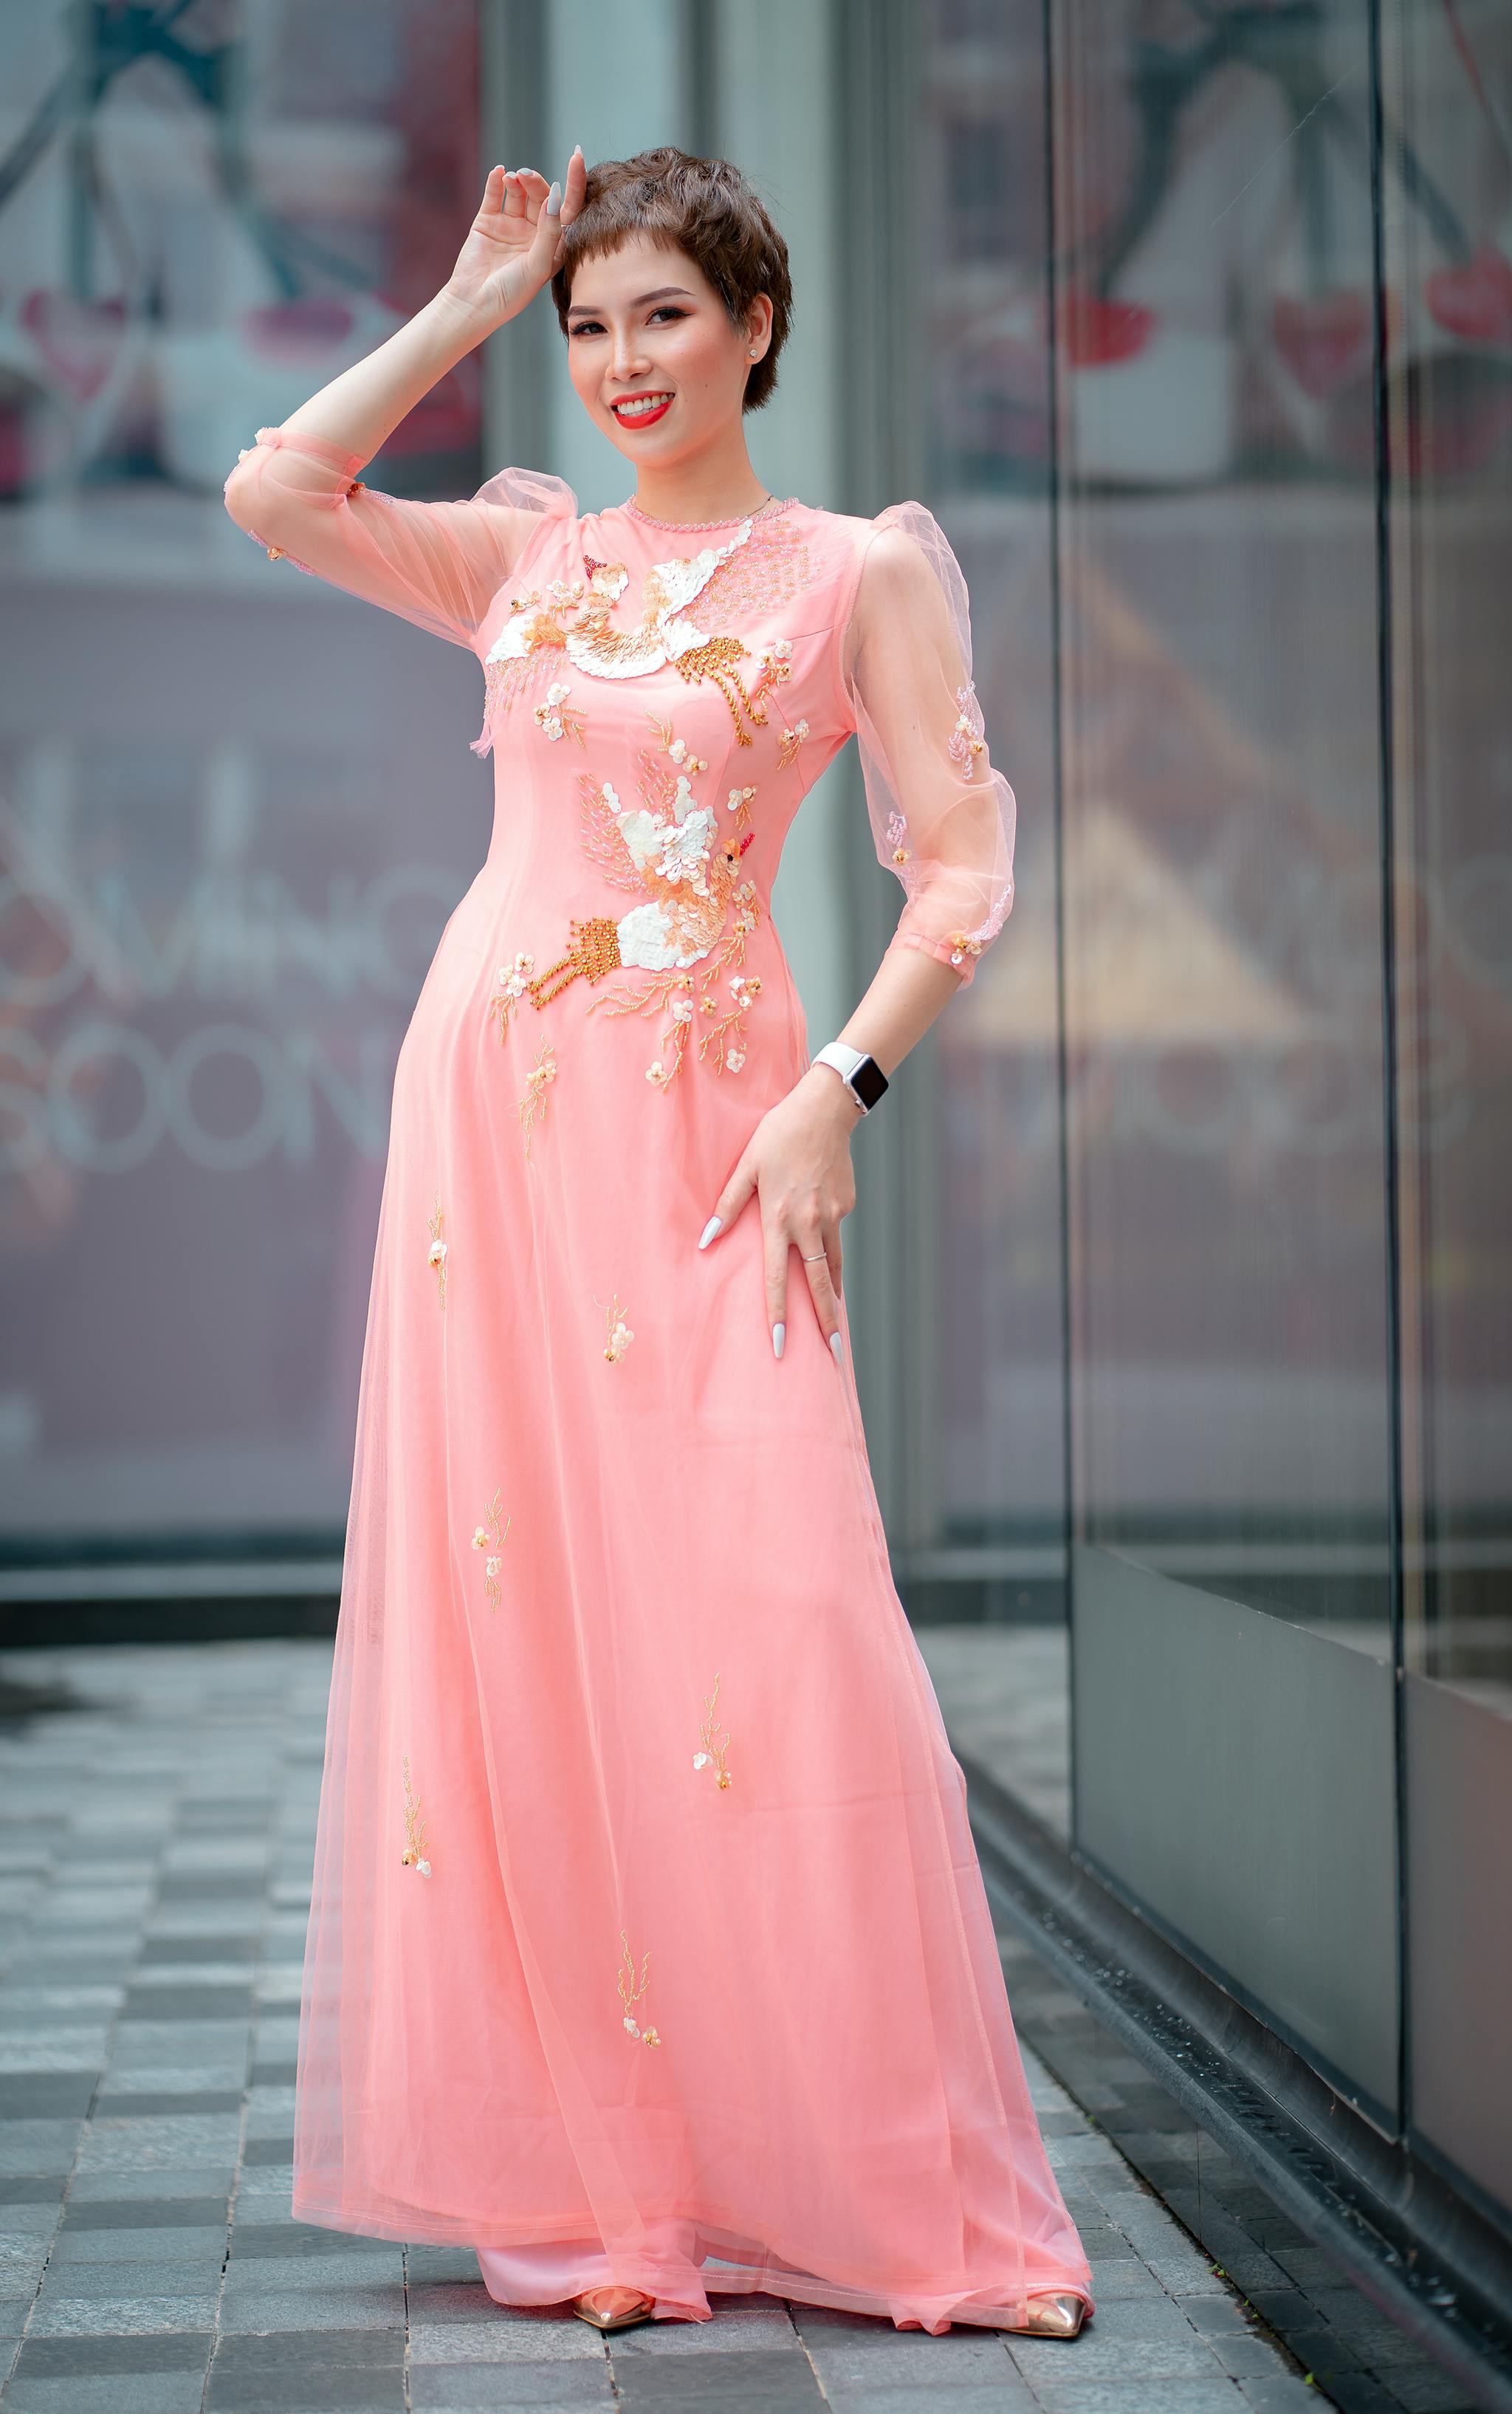 Beautiful Lady Long Dress Poses Near Stock Photo 521006413 | Shutterstock